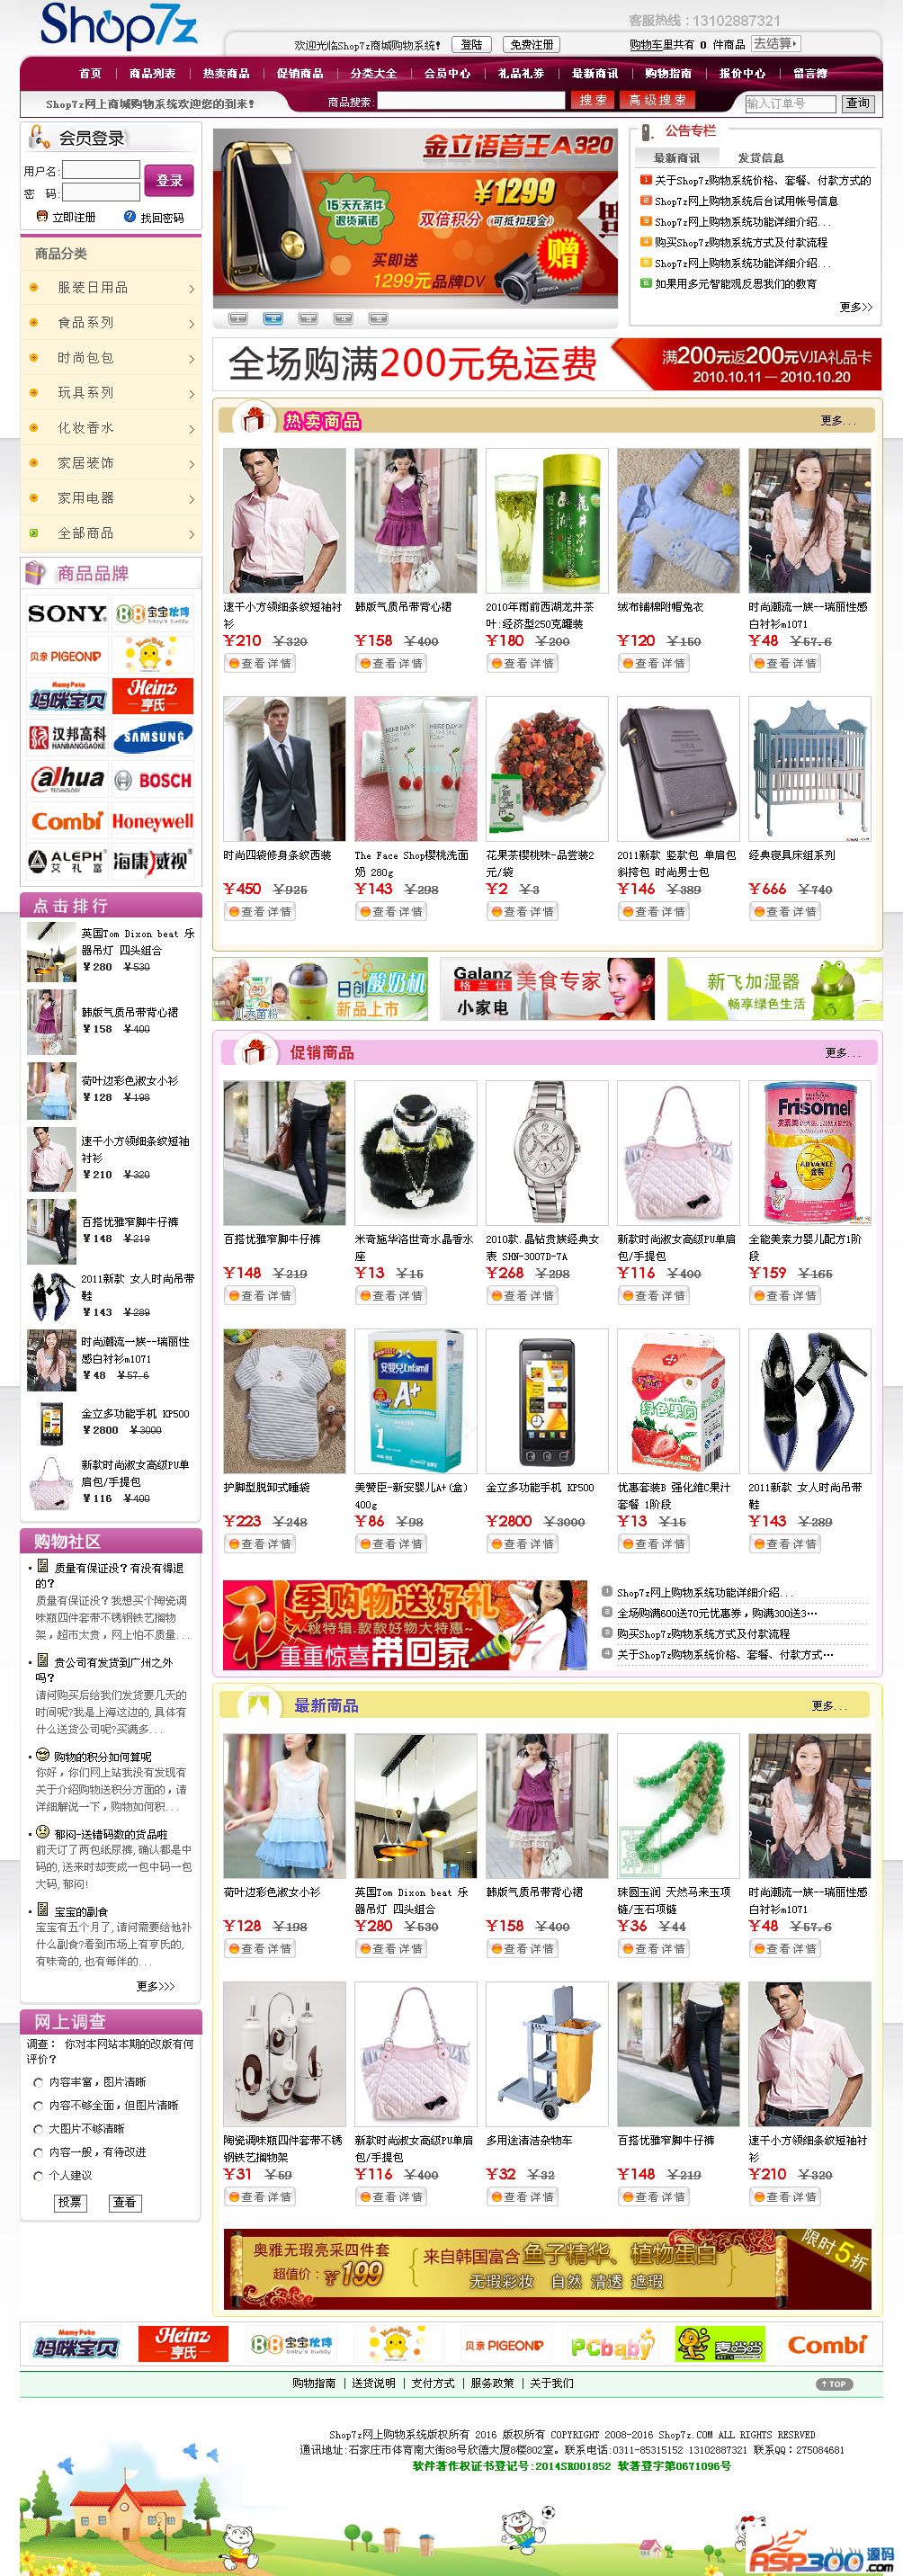 【首发】Shop7z网上购物系统时尚版 v7.5